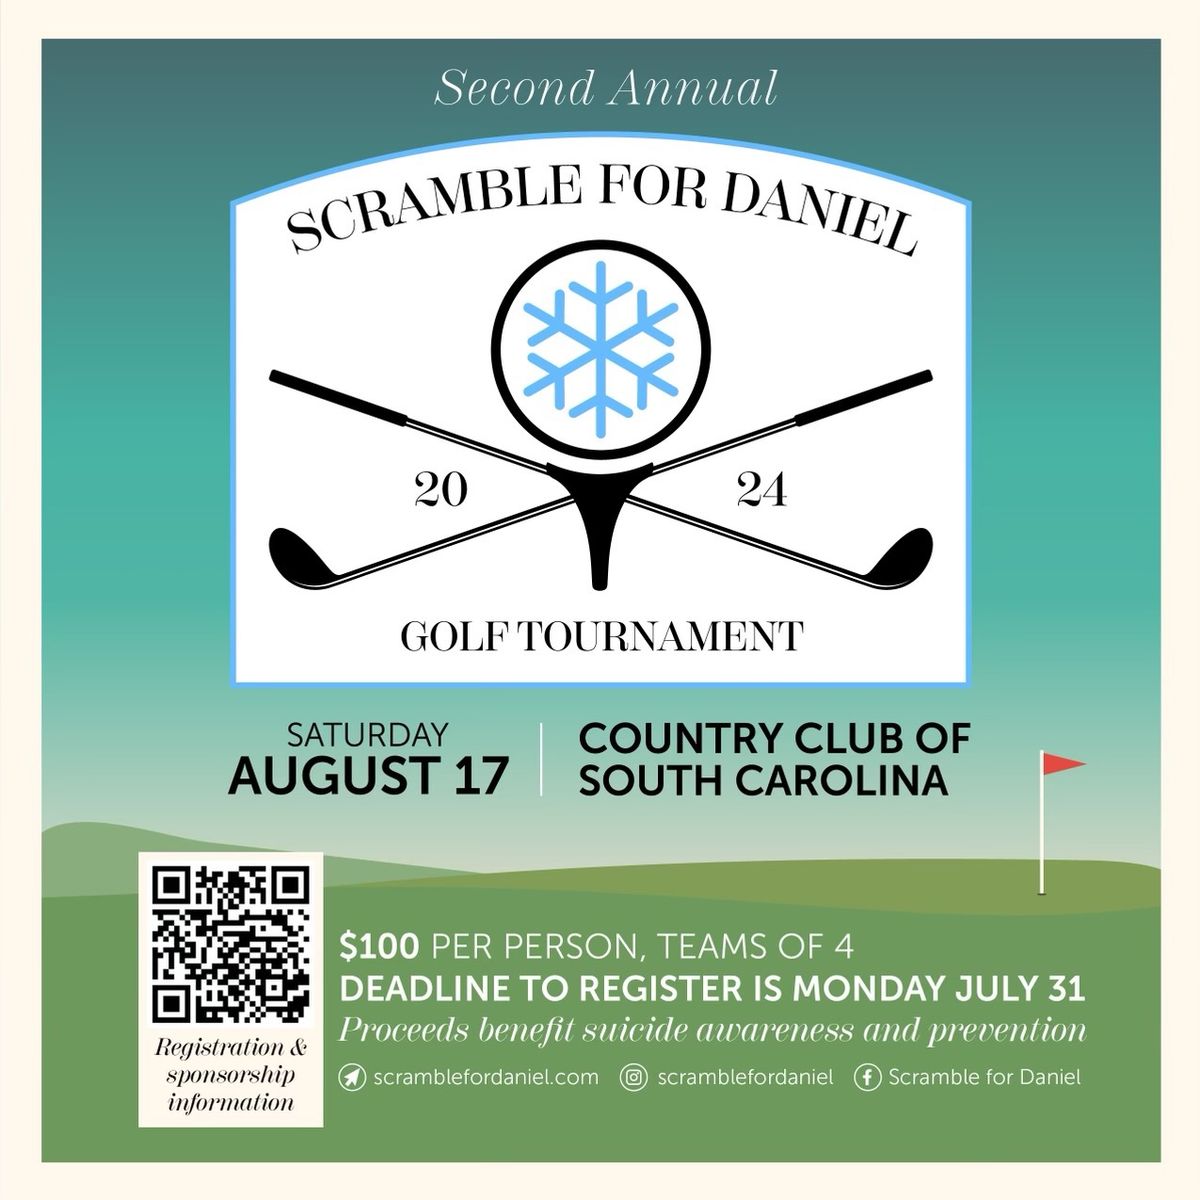 Second Annual - Scramble for Daniel Golf Tournament